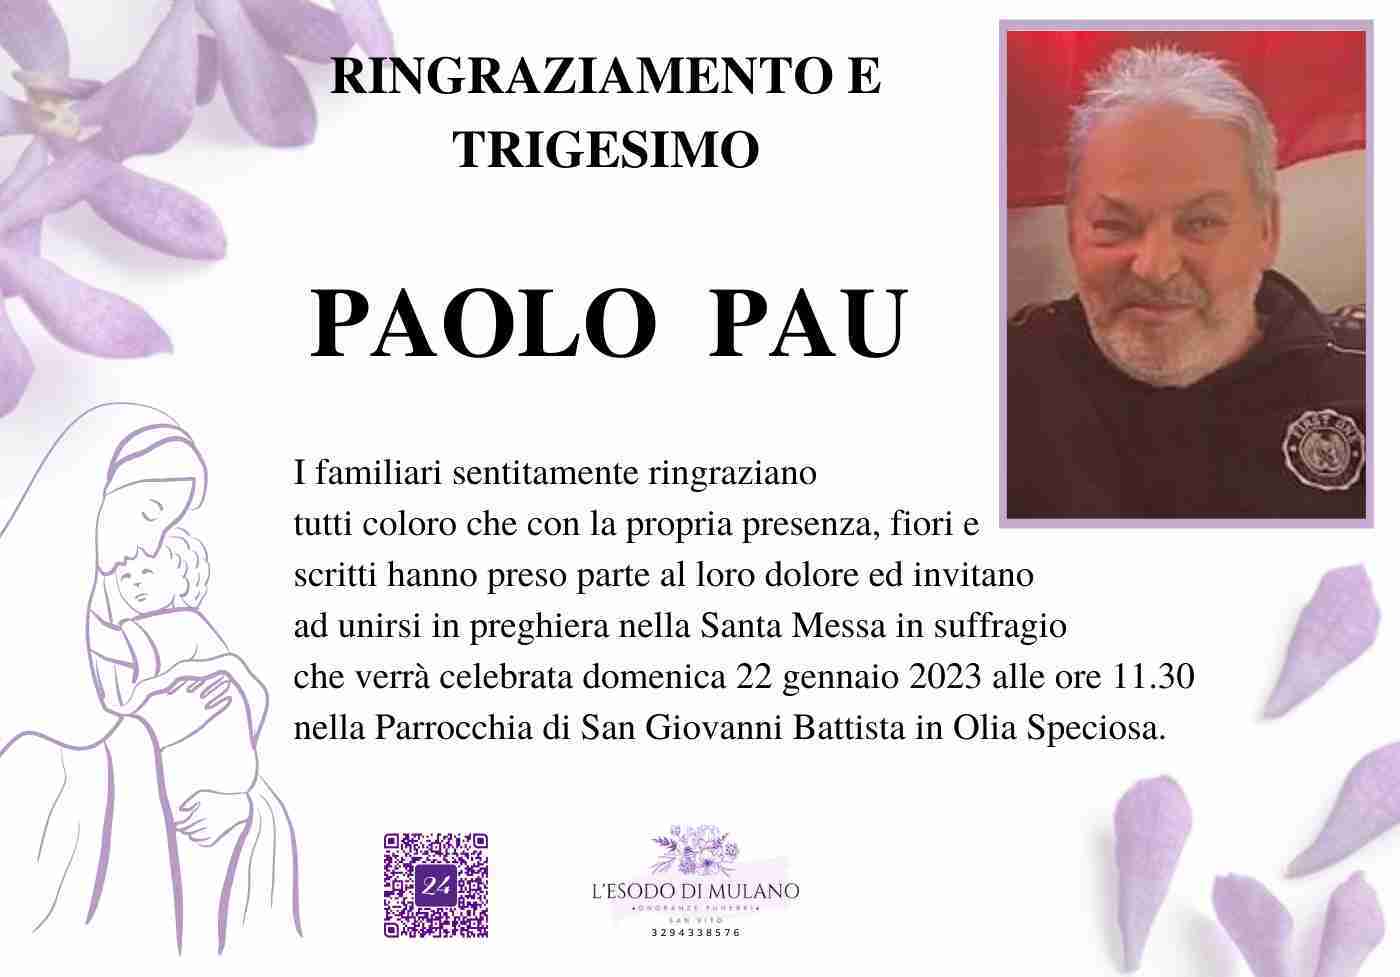 Paolo Pau